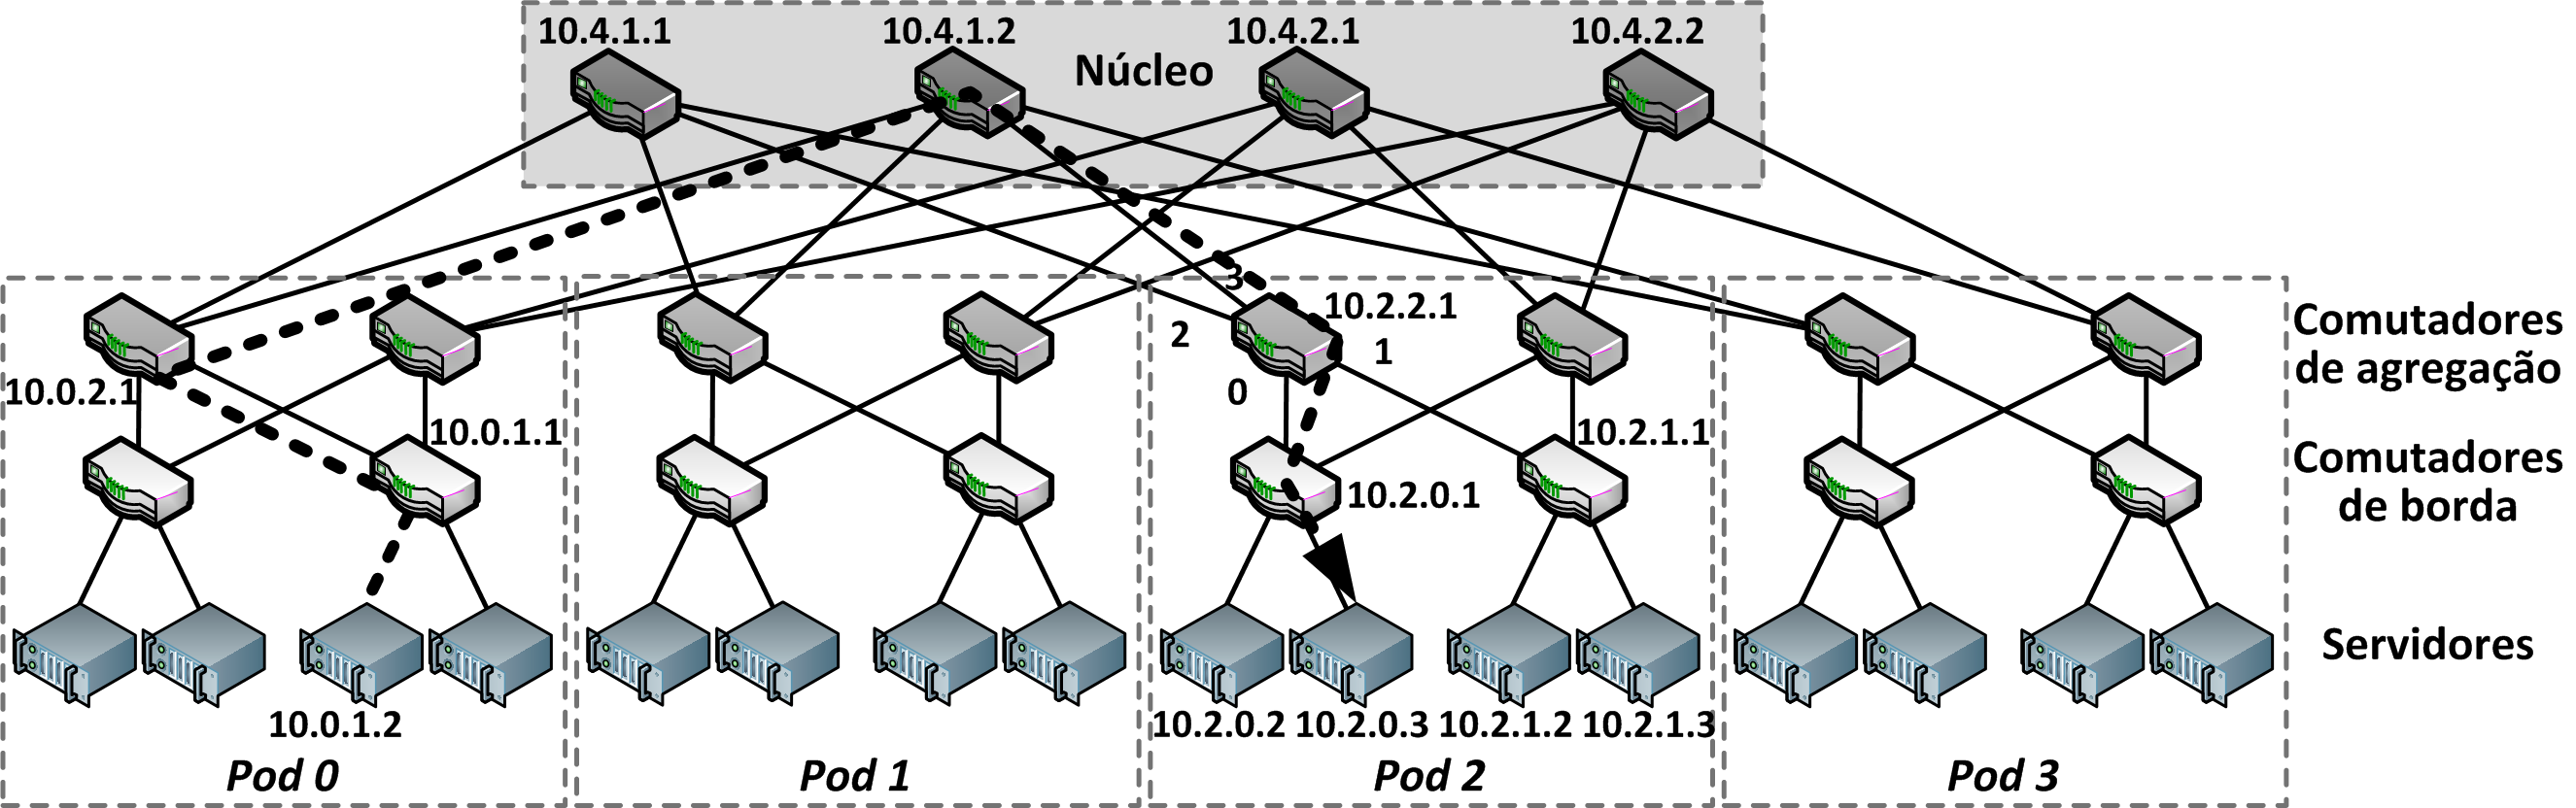 1.5.1. Fat-tree Uma das arquiteturas cujo principal objetivo é reduzir o custo mantendo a capacidade de comunicação utilizando a banda total entre quaisquer pares de servidores é denominada Fat-tree